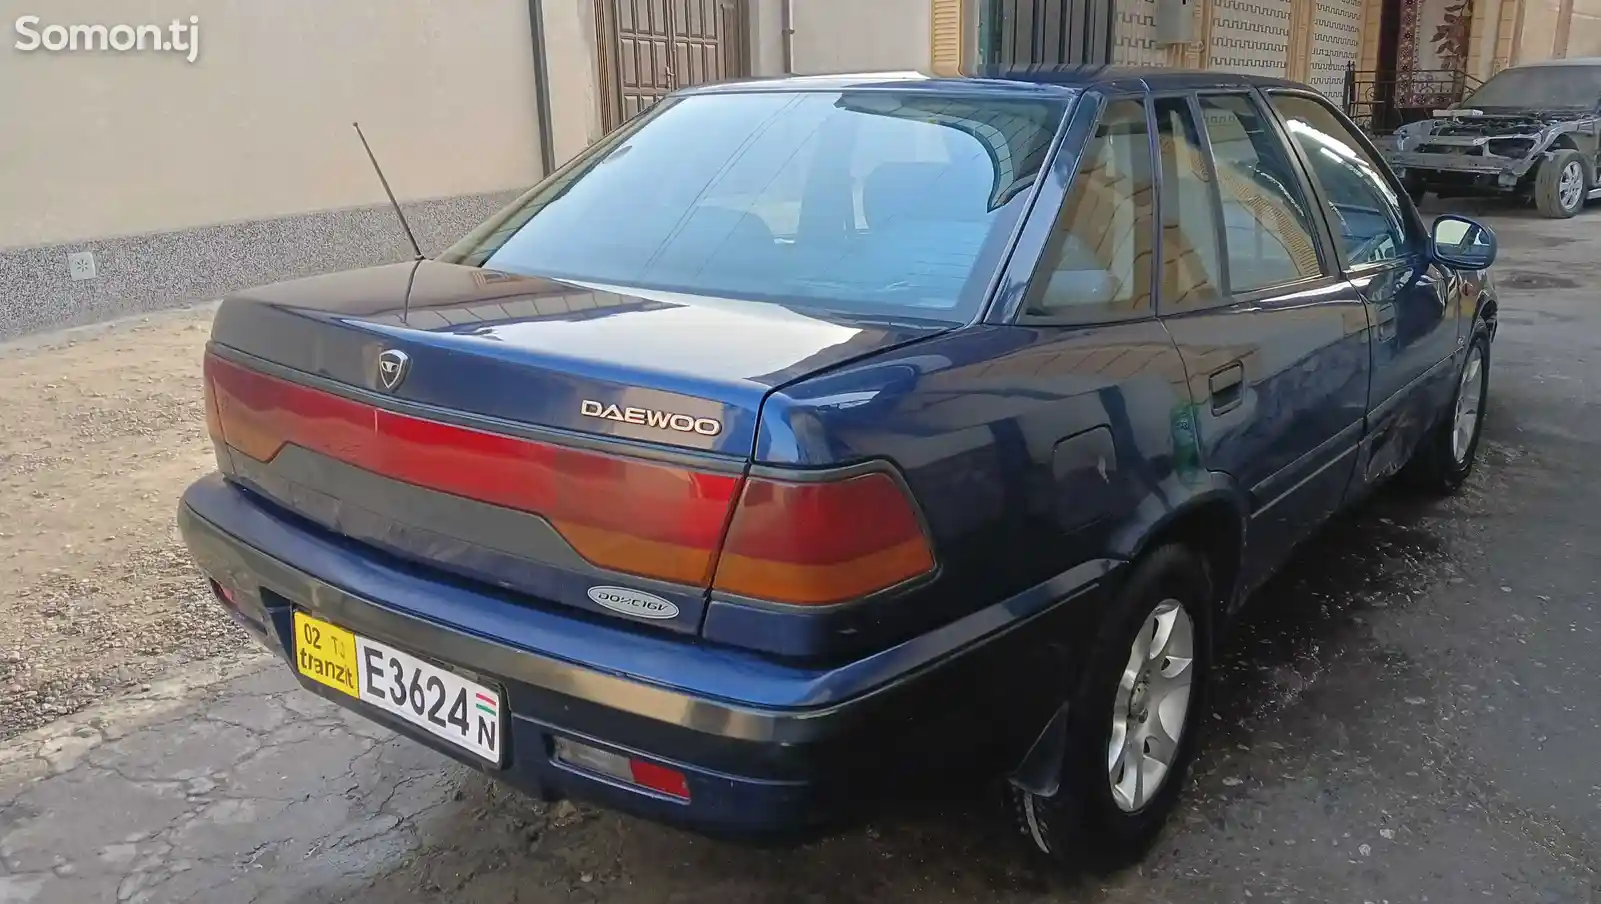 Daewoo Espero, 1997-5